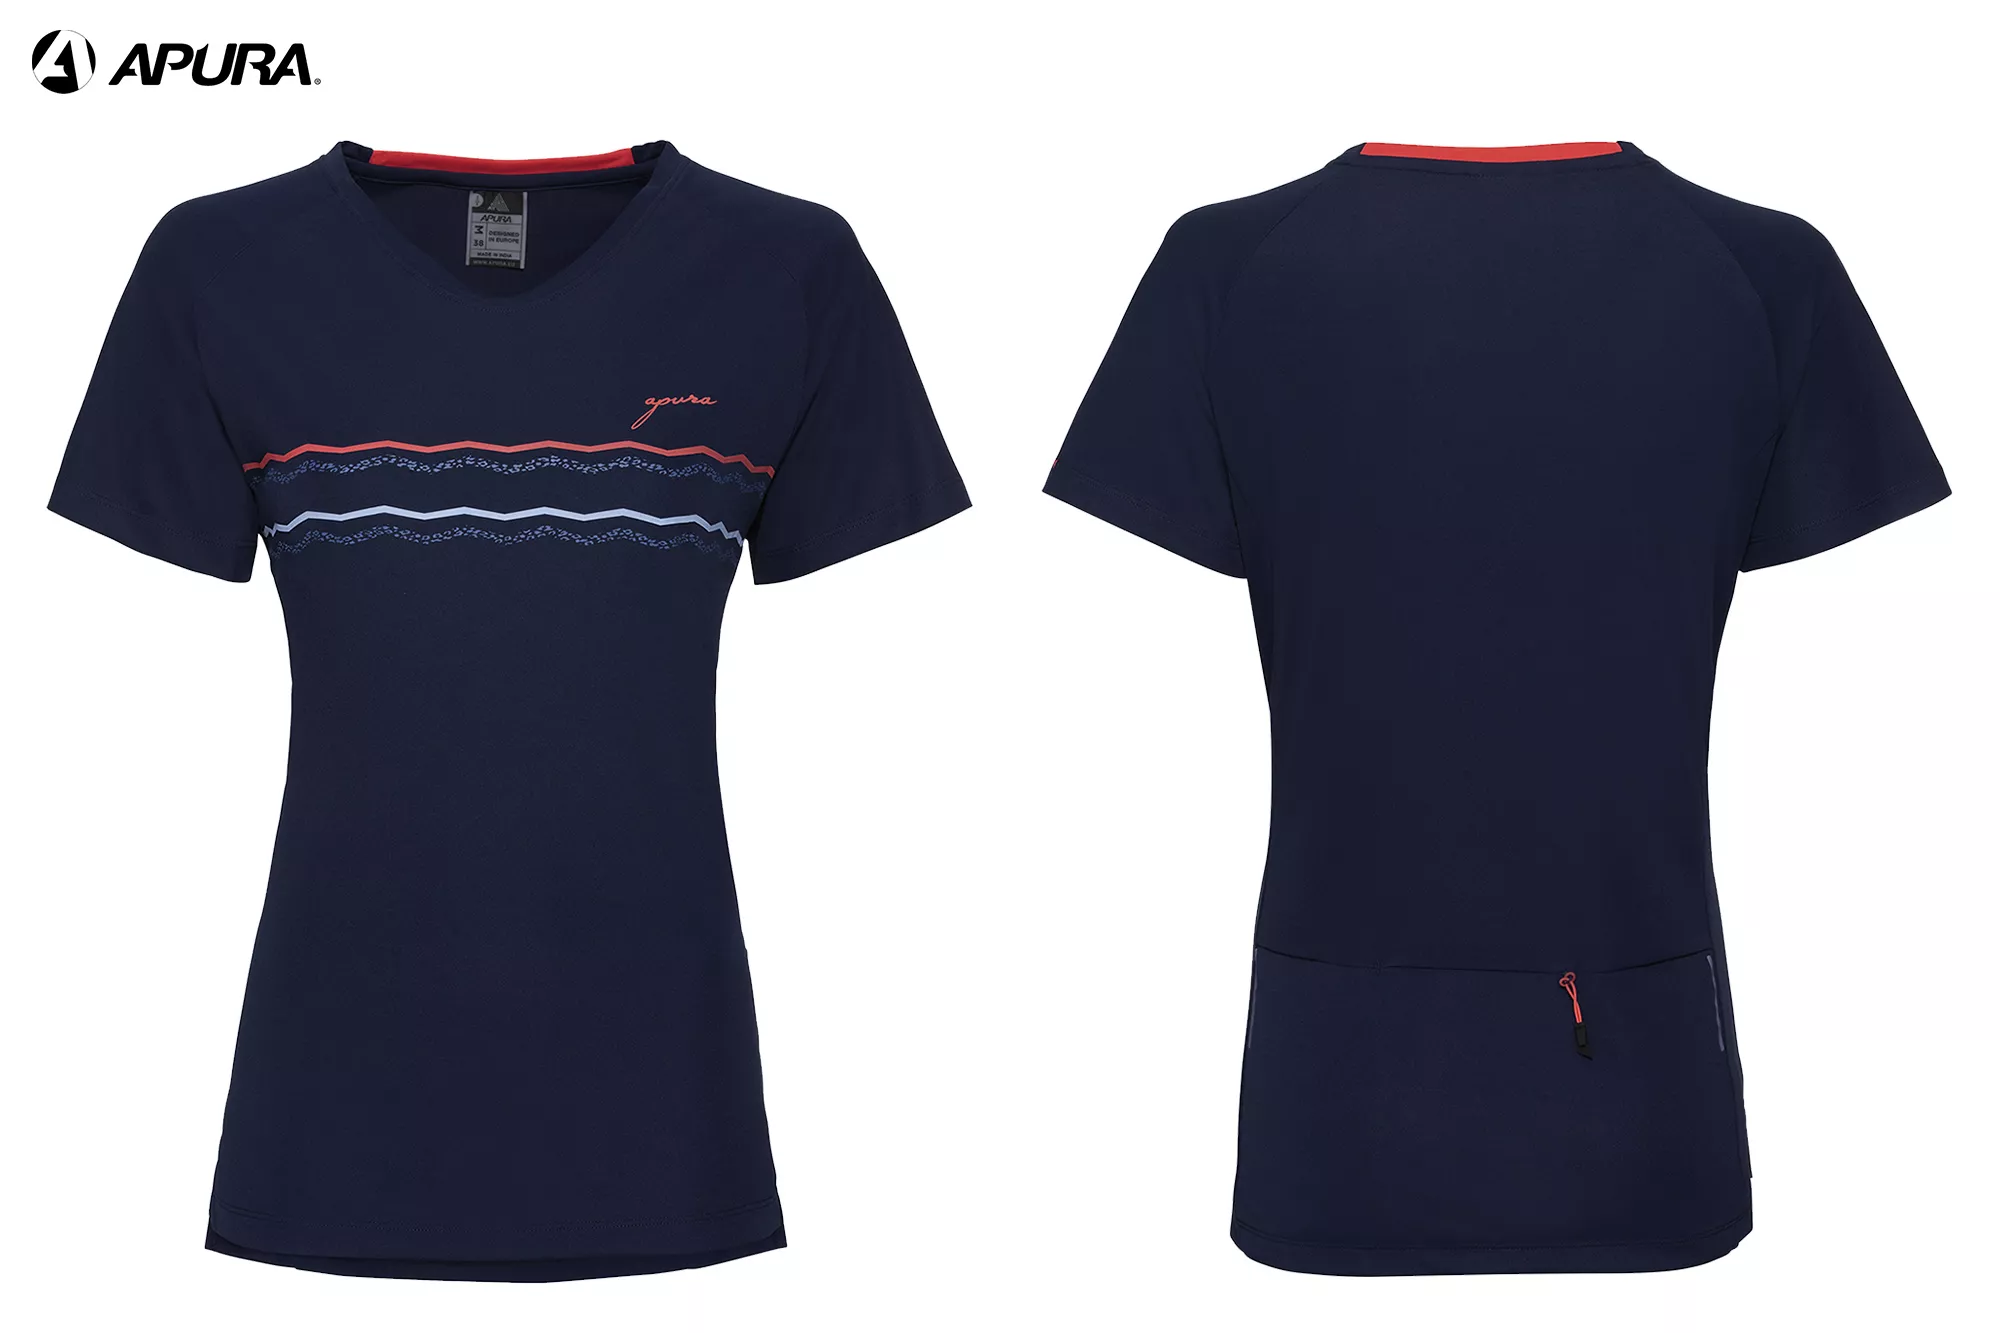 APURA Idia 2.0 - Shirt Damen - dunkelblau